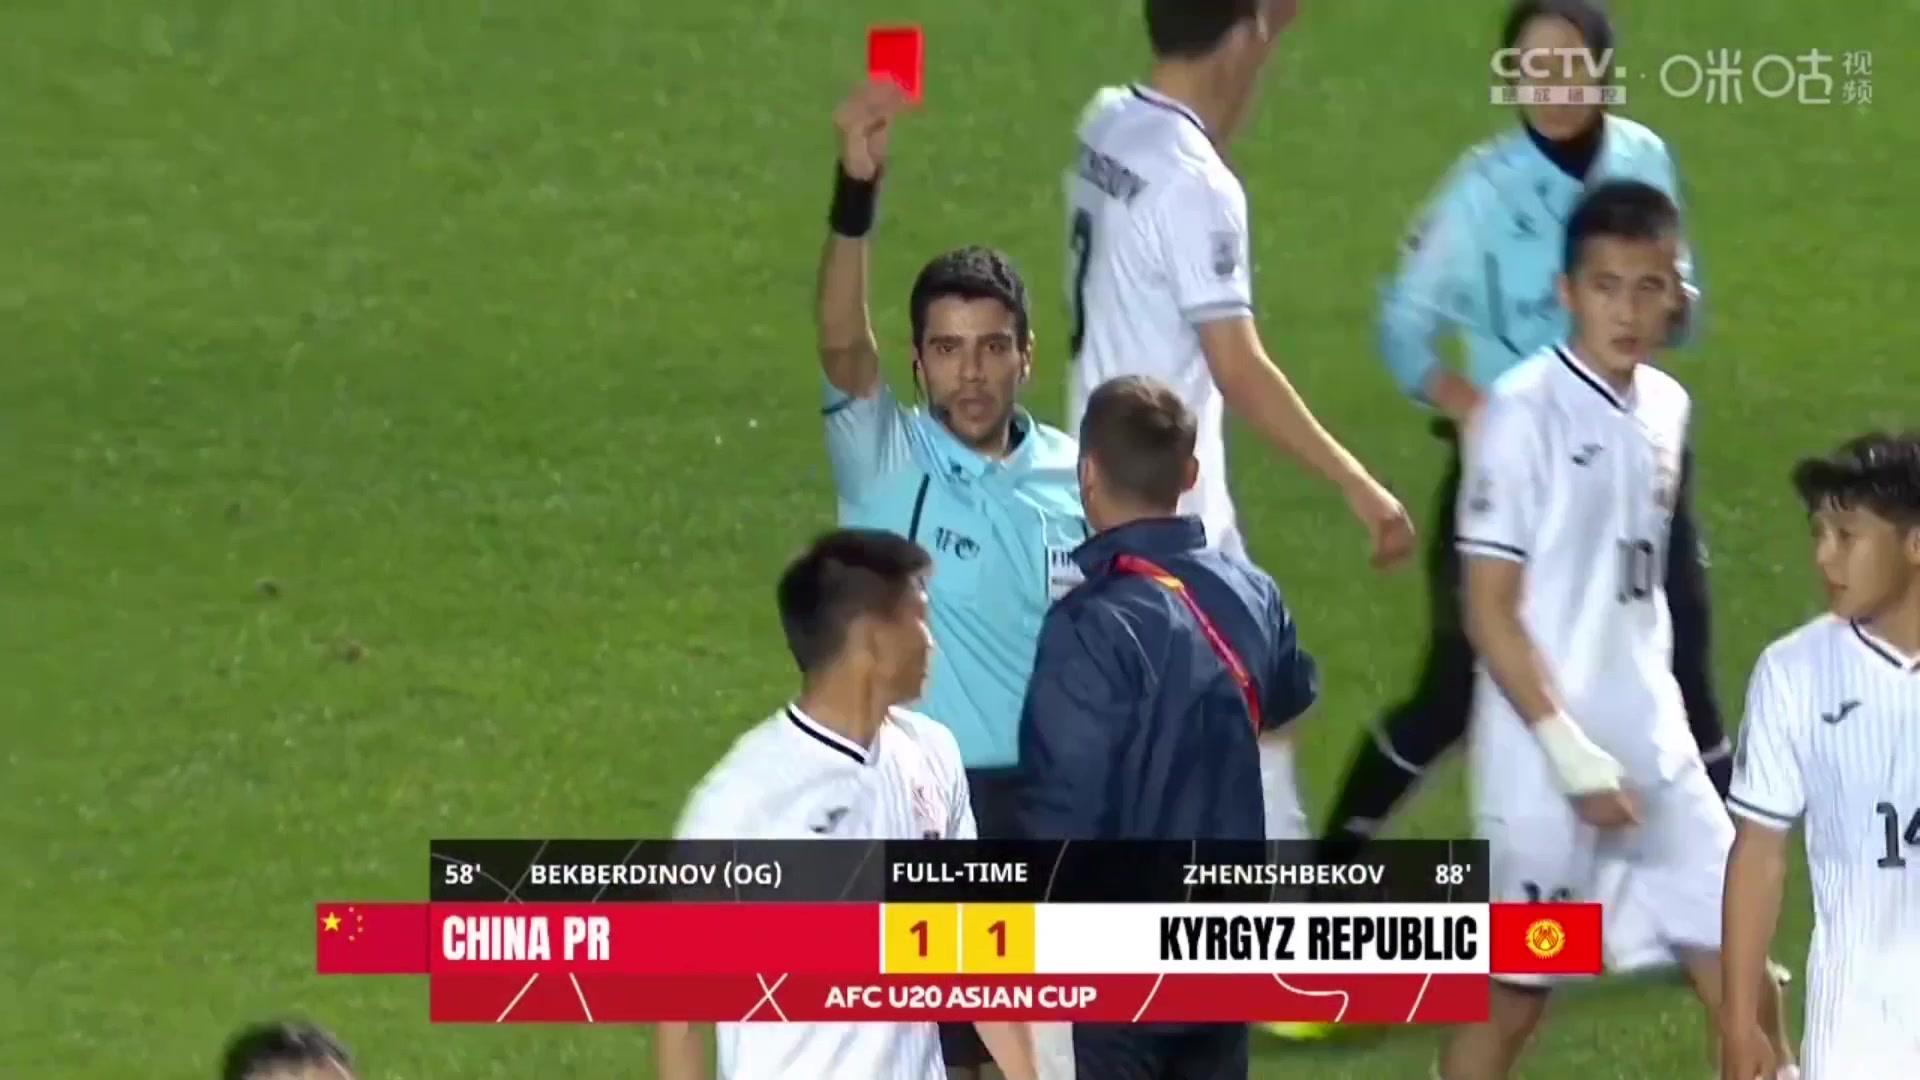 吉尔吉斯斯坦球员赛后顶撞裁判被追加红牌